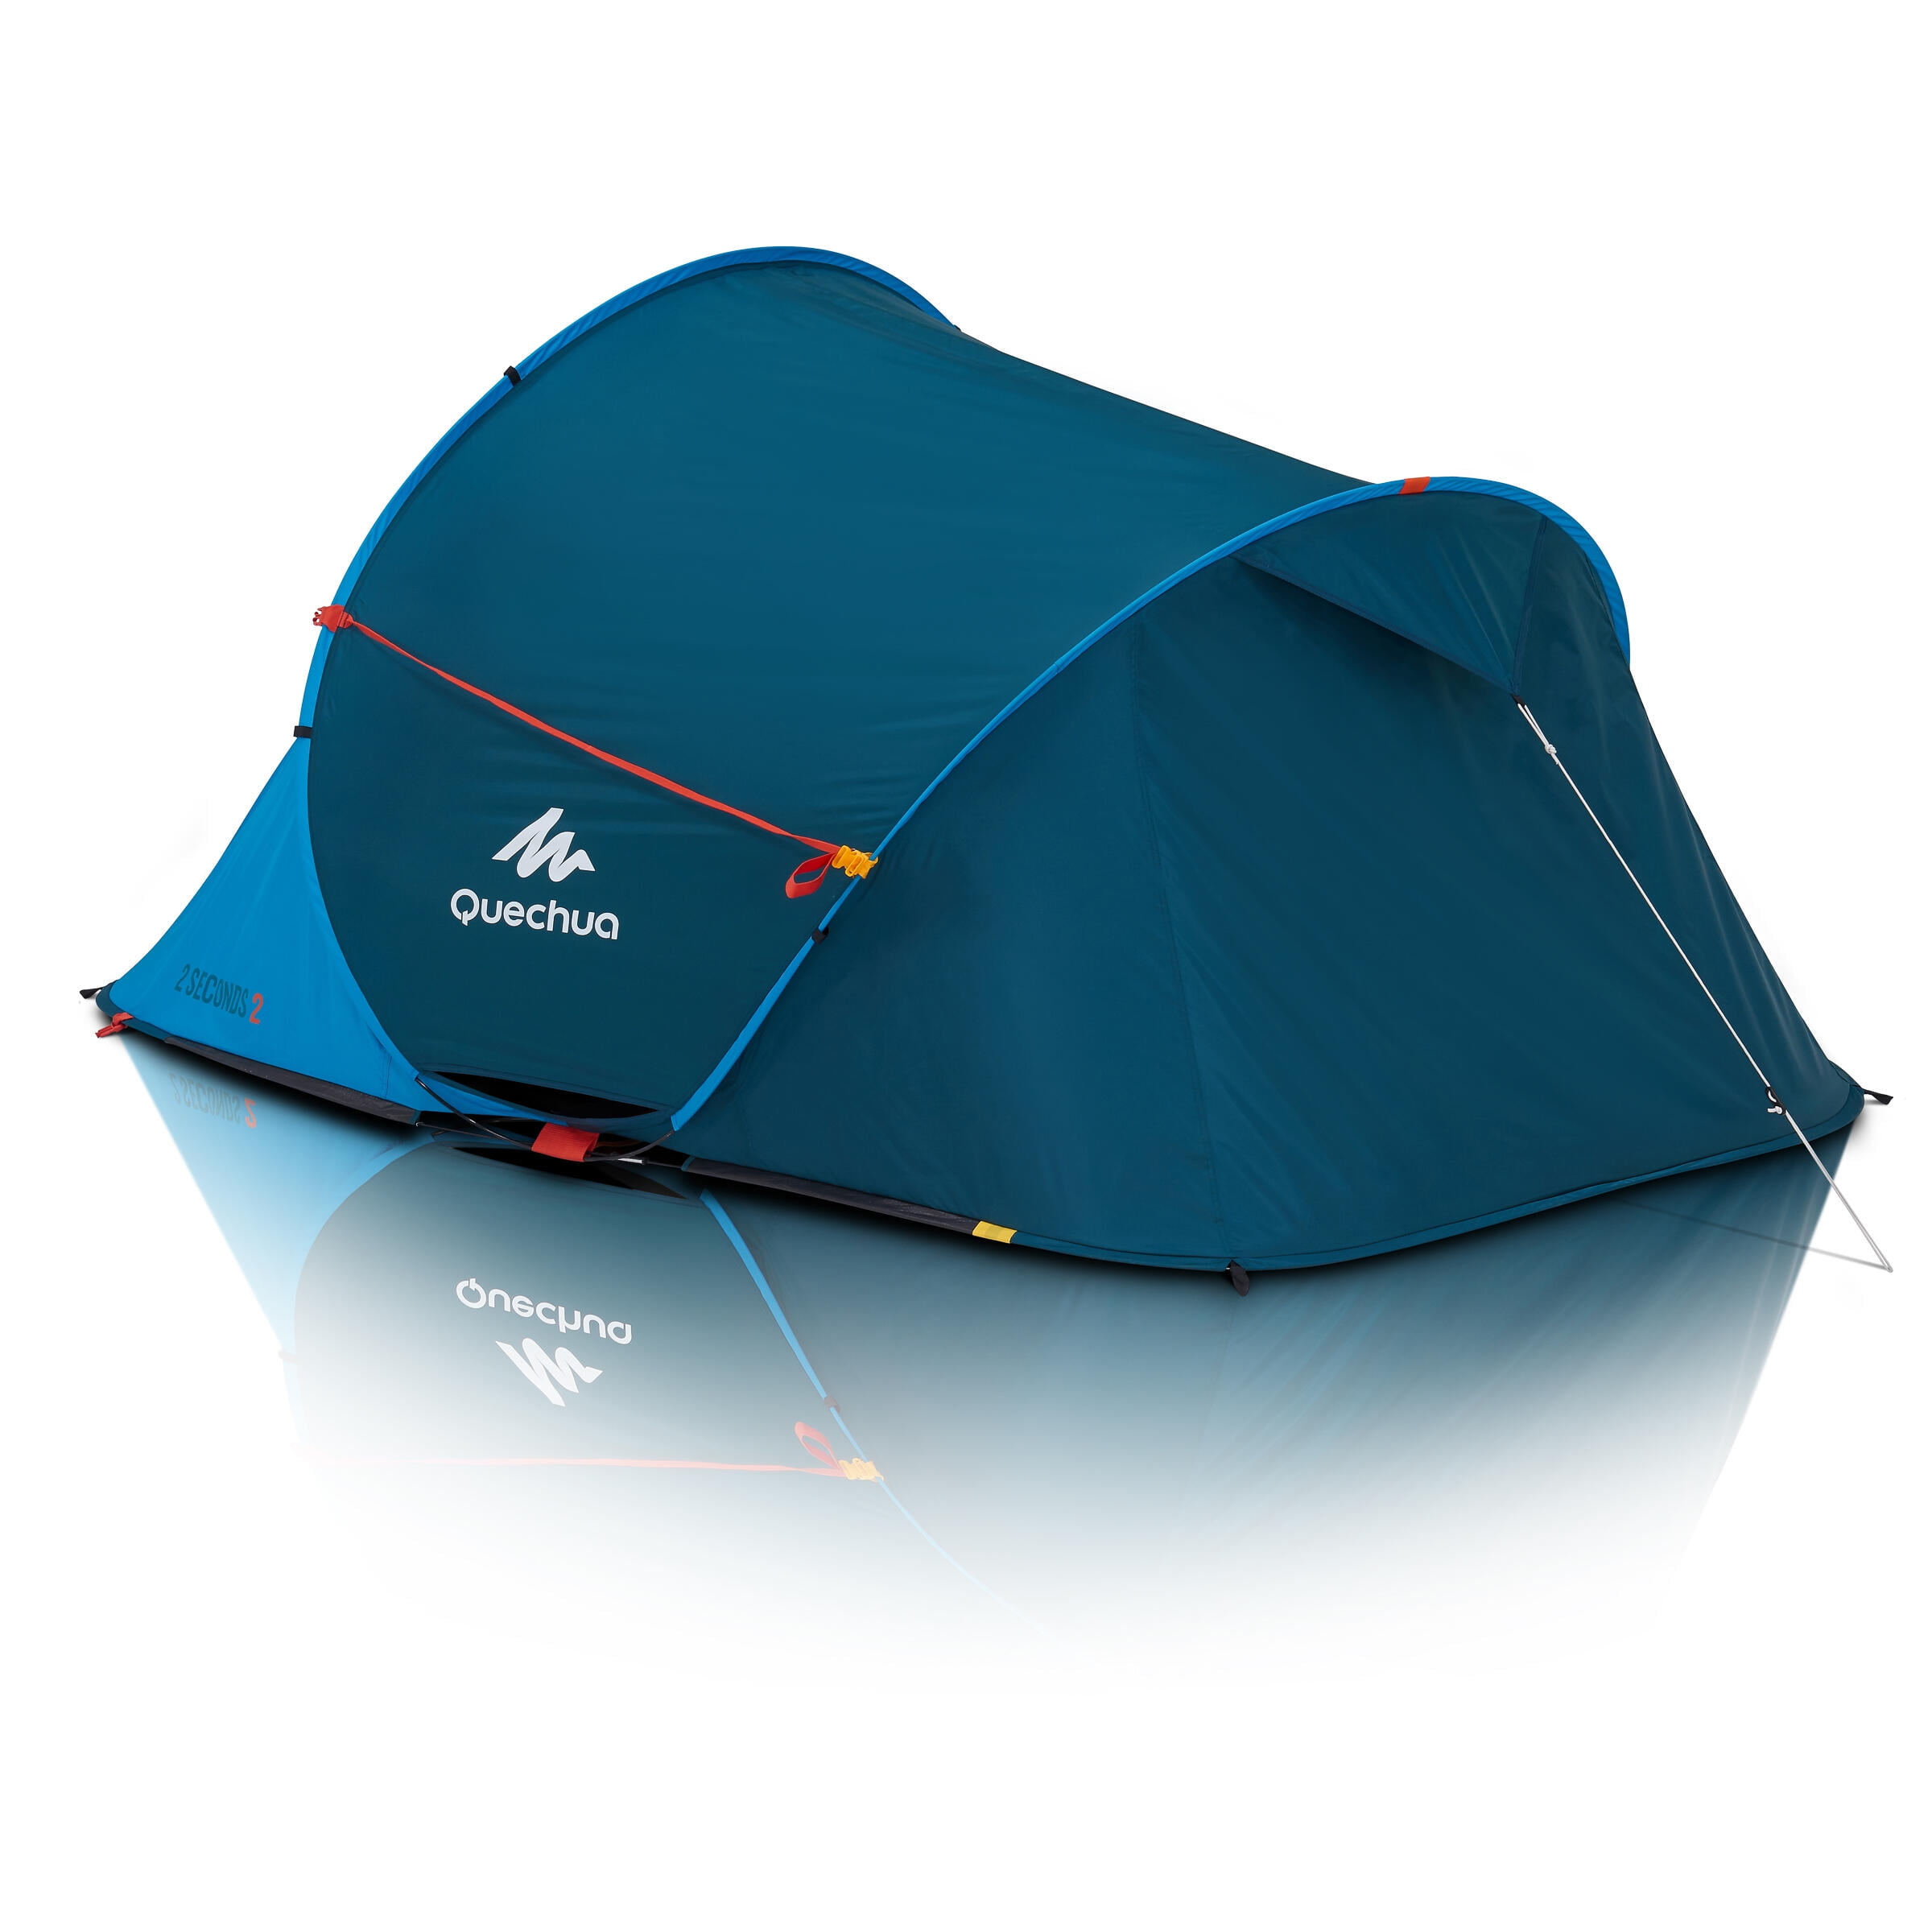 Decathlon Quechua, 3 Person 2 Second Up Camping Tent, Waterproof Wall Technology, Blue - Walmart.com